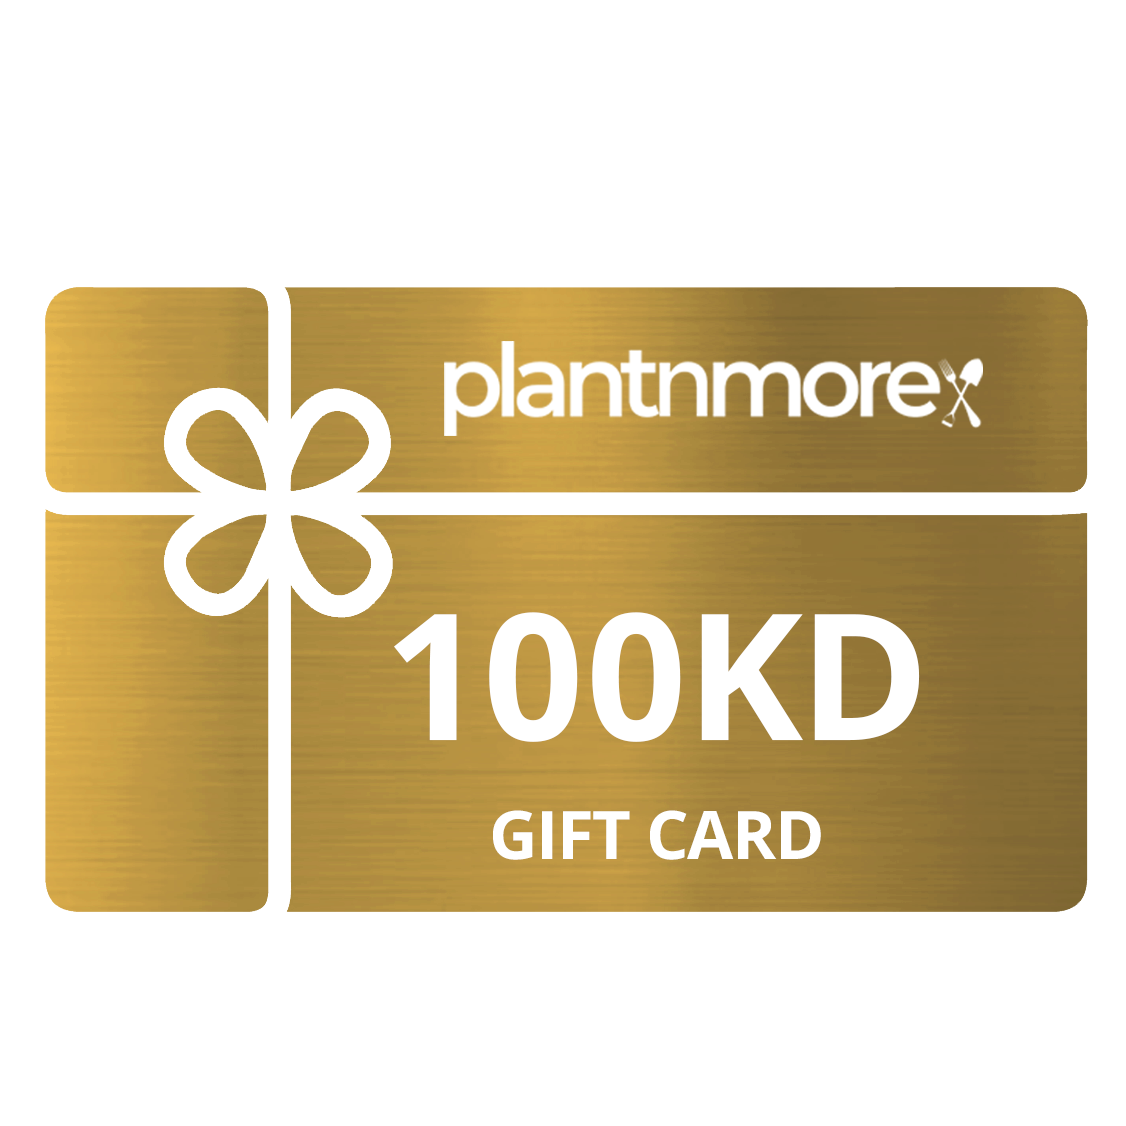 100KD Gift Card • قسيمة شرائية - plantnmore